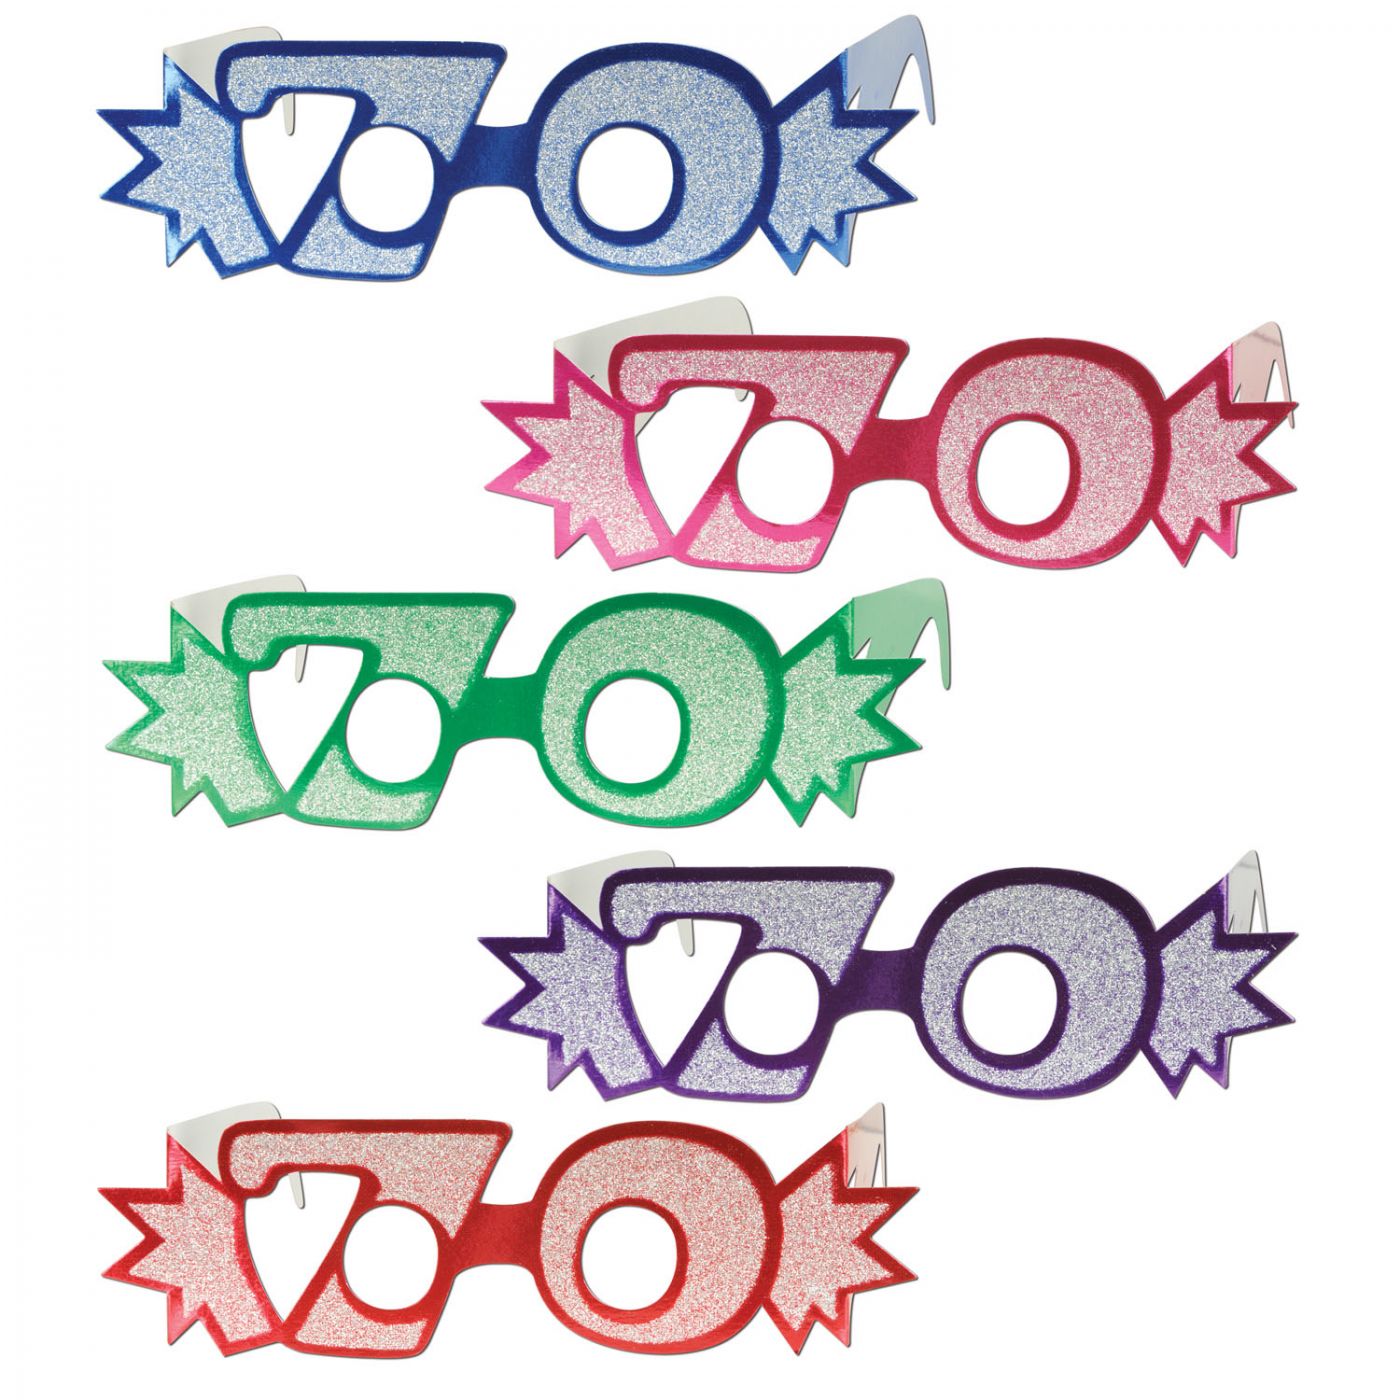  70  Glittered Foil Eyeglasses (25) image